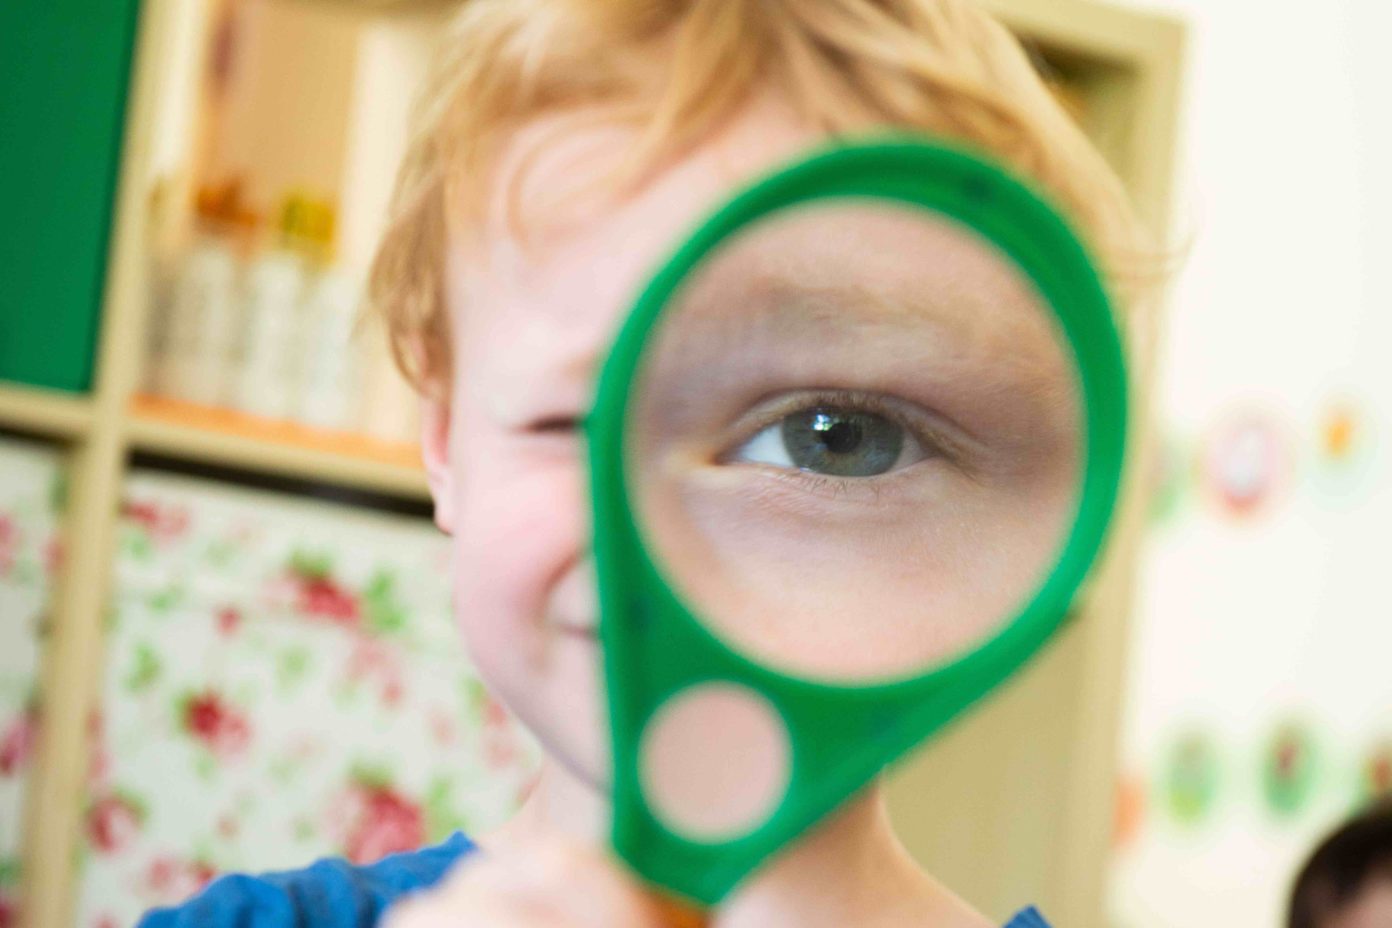 Portrait eines Kindes, das eine Lupe vors Auge hält, wodurch man das Auge im Vordergrund sehr groß sieht.